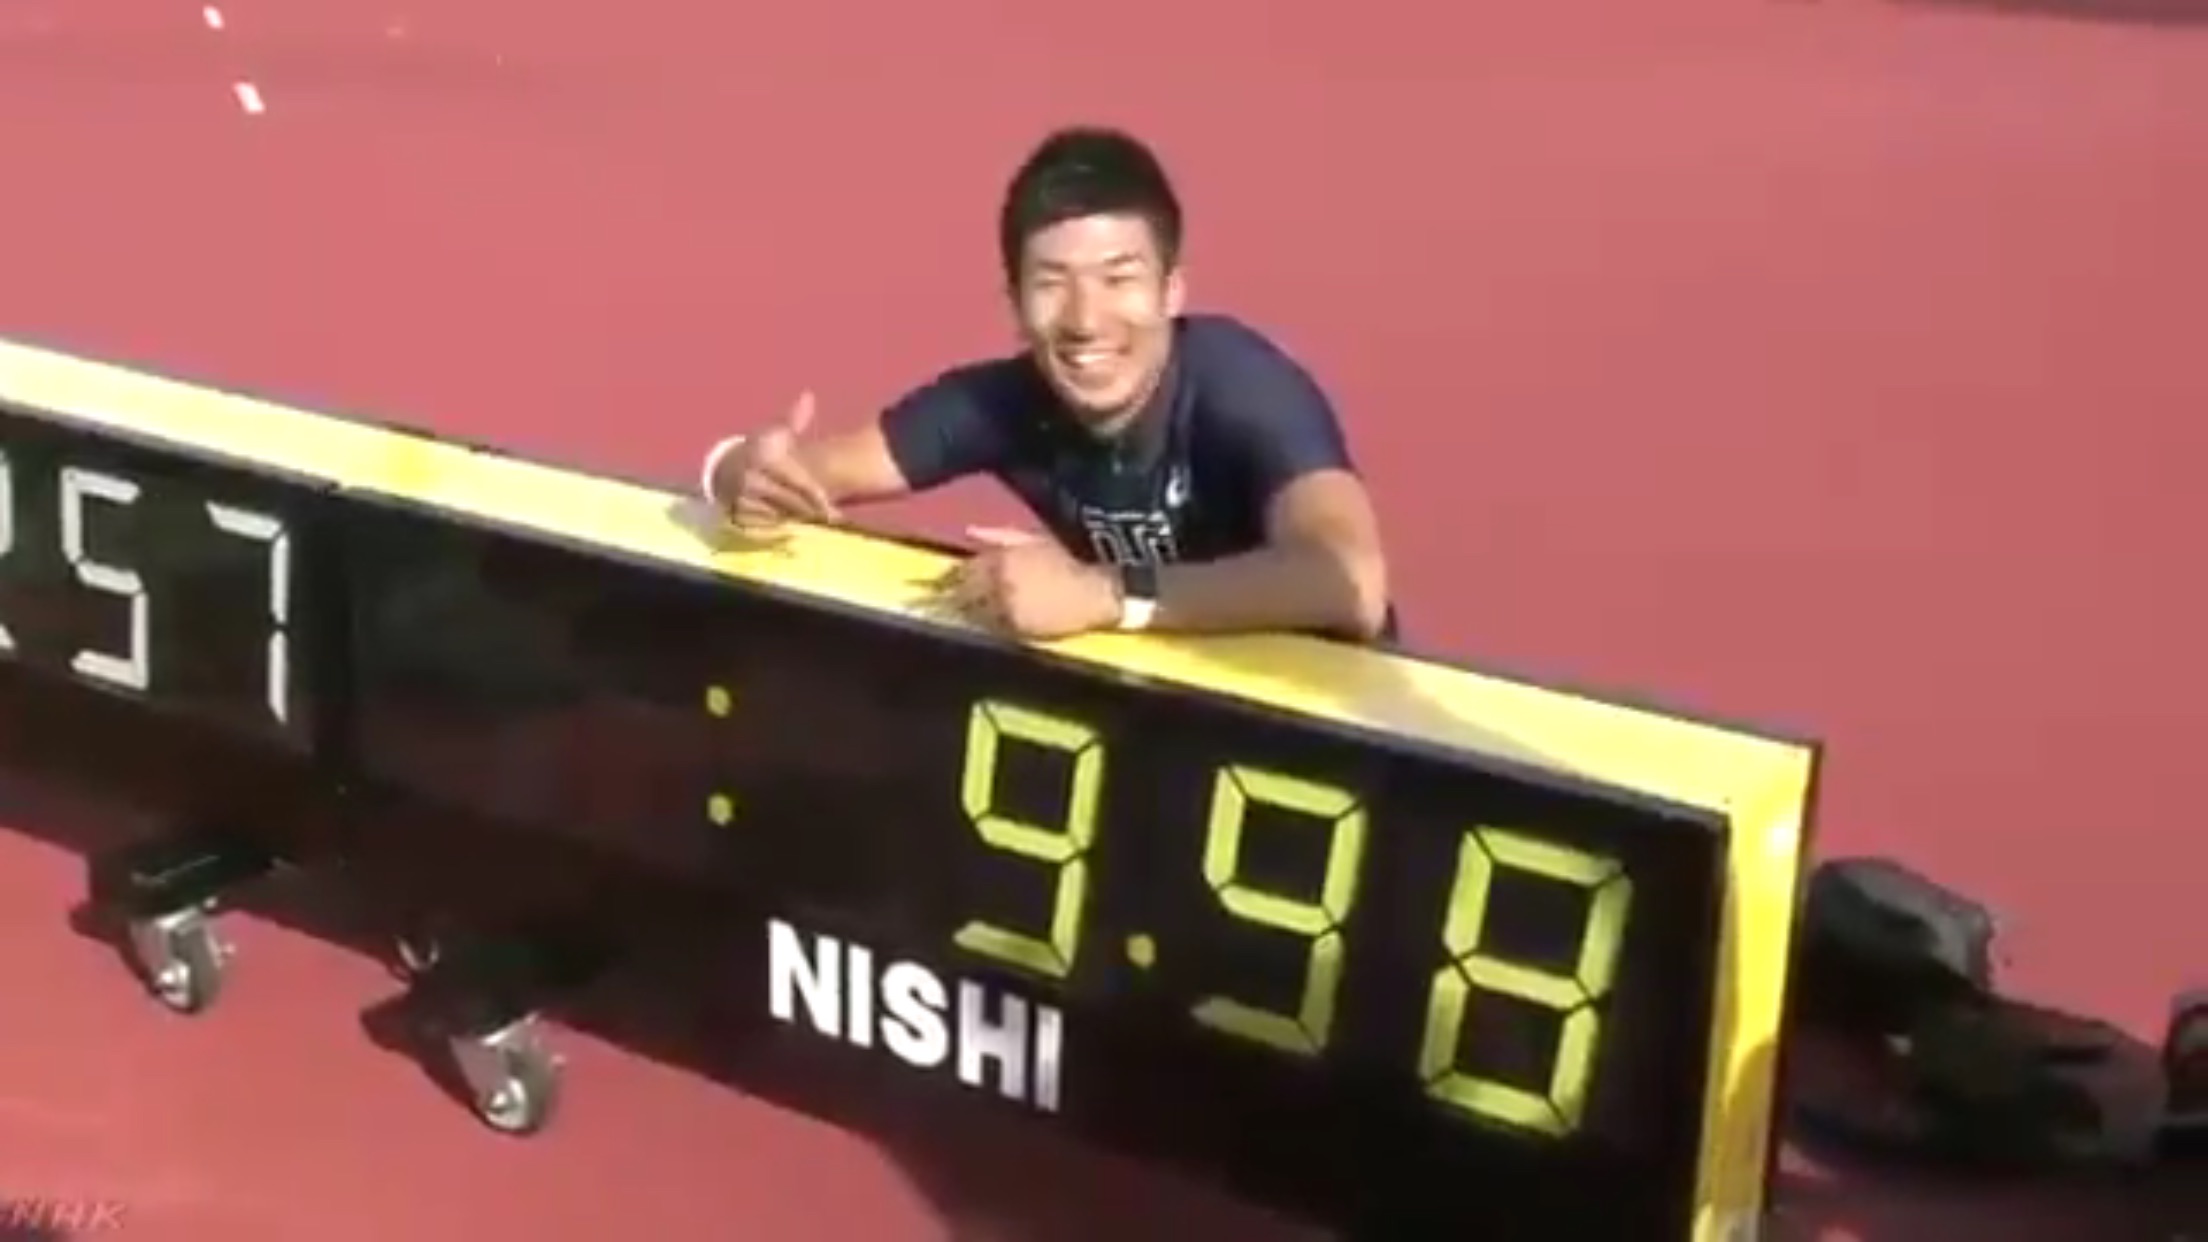 นักวิ่งกรีฑาชายญี่ปุ่น